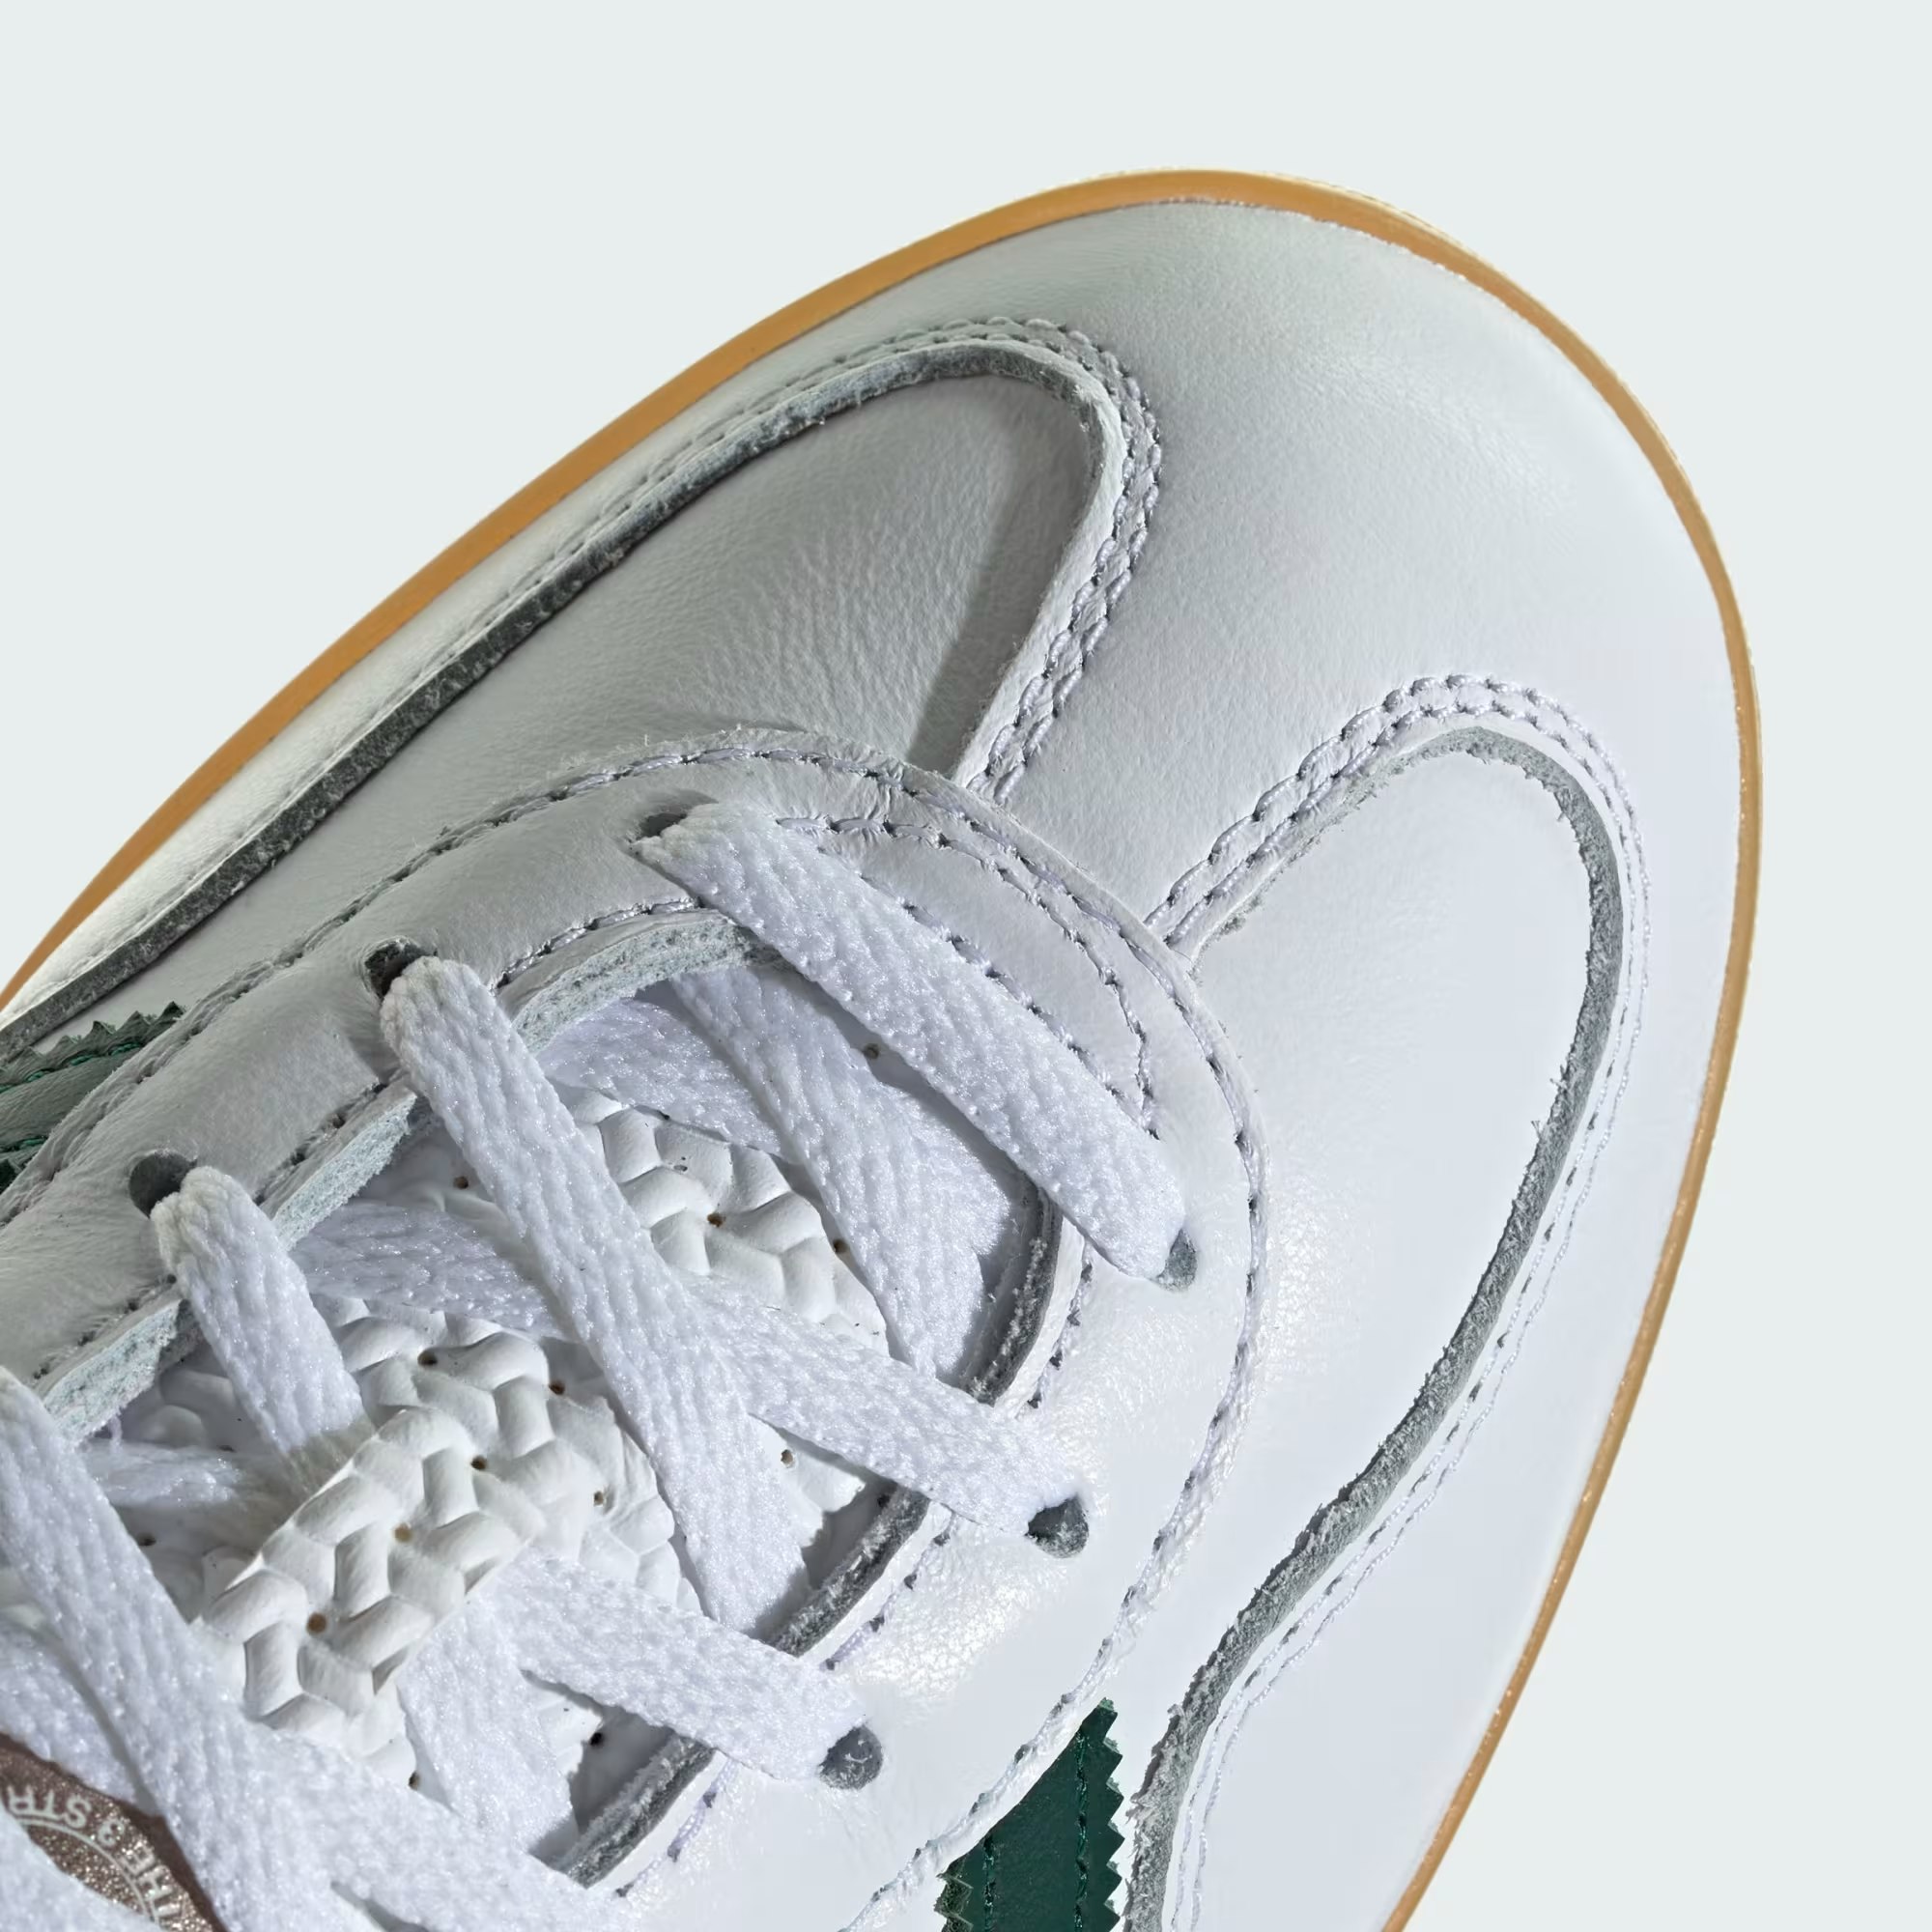 adidas Gazelle "White Collegiate Green"